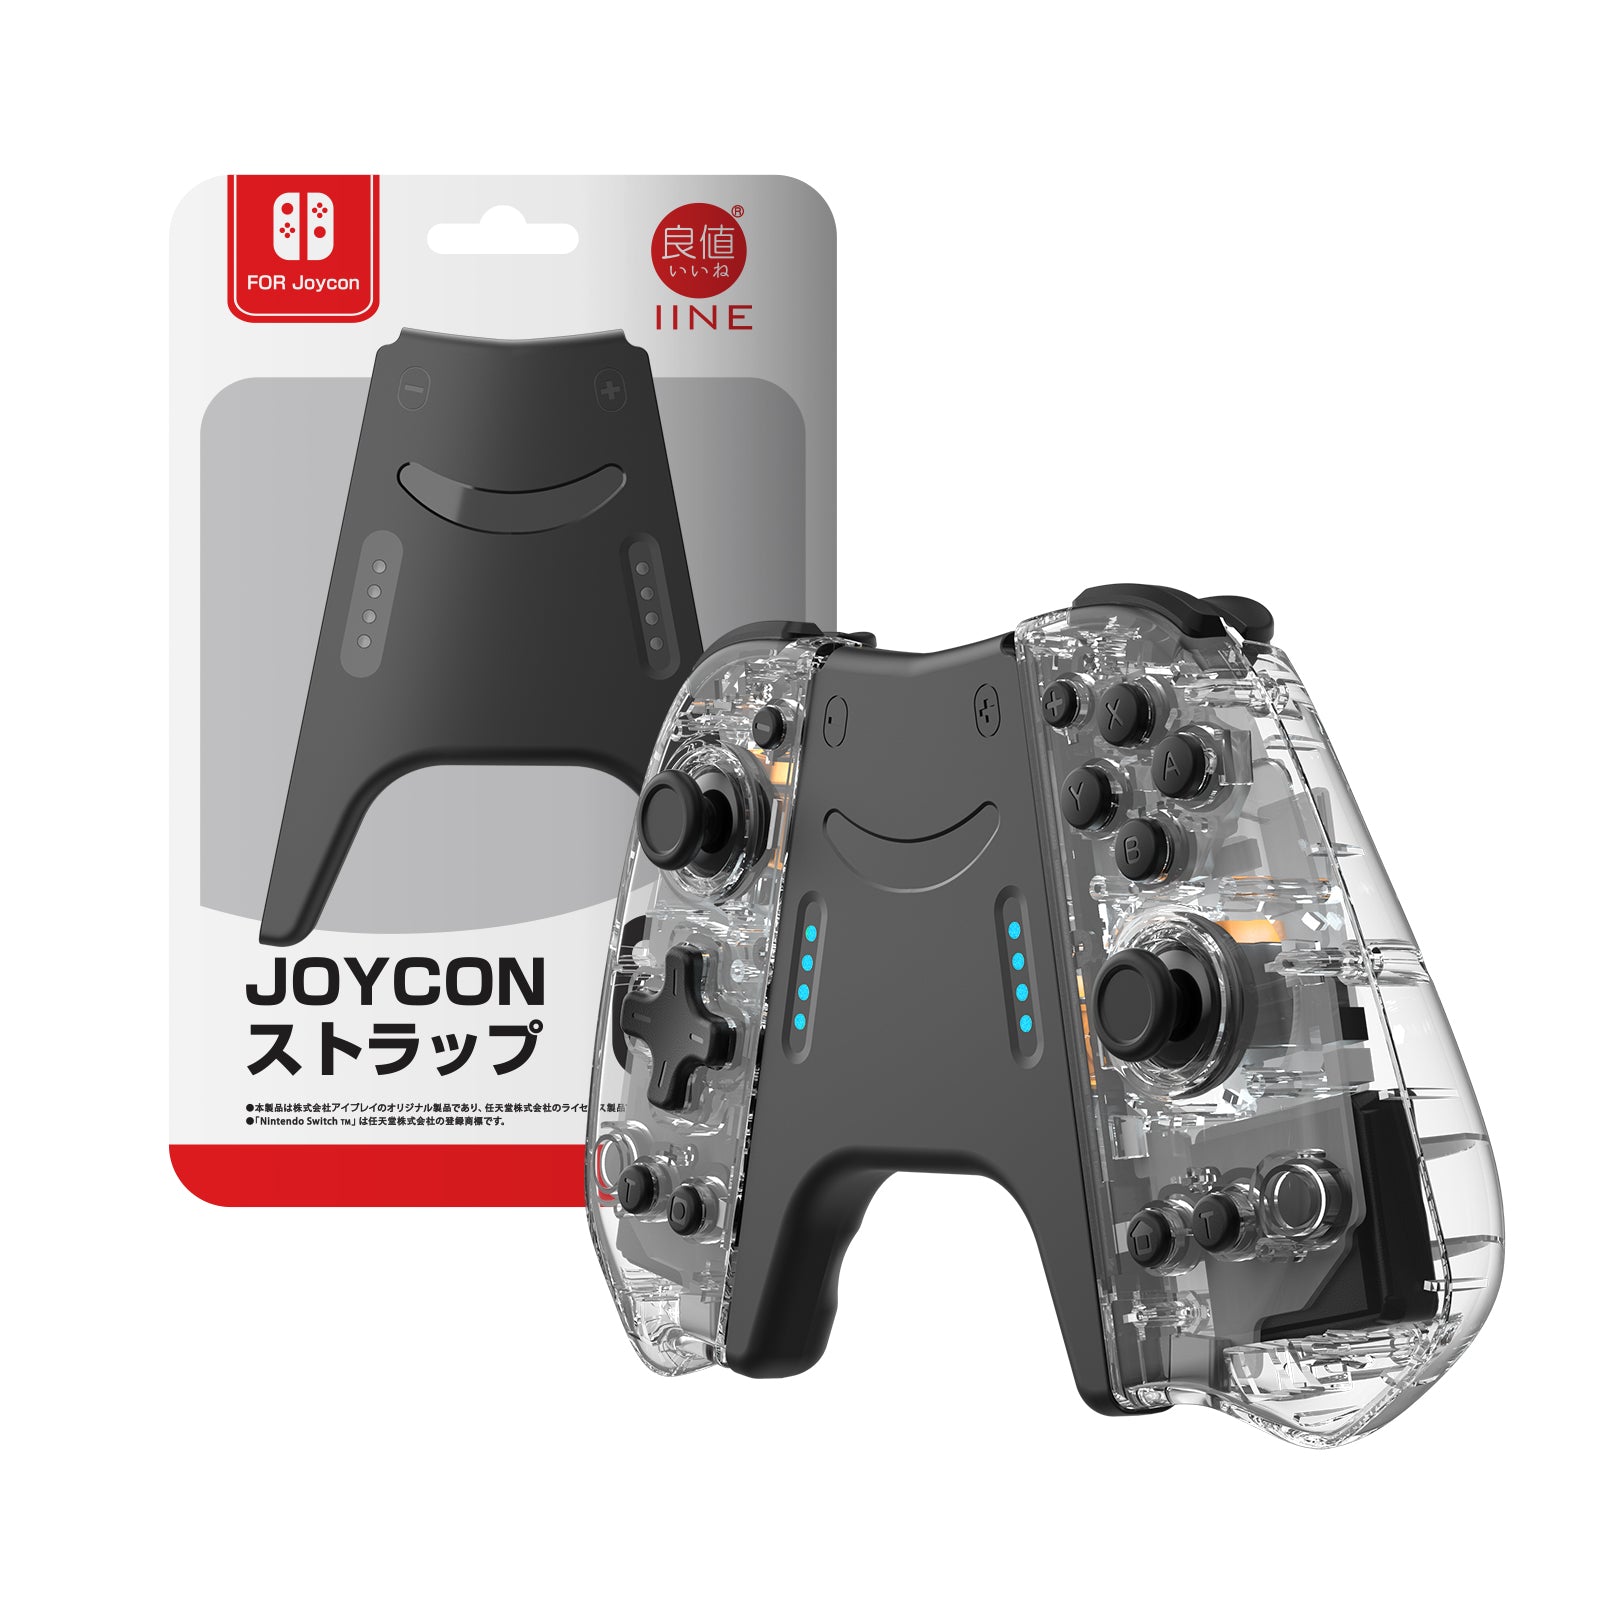 – Nintendo Store IINE Joypad Official IINE Switch Elite